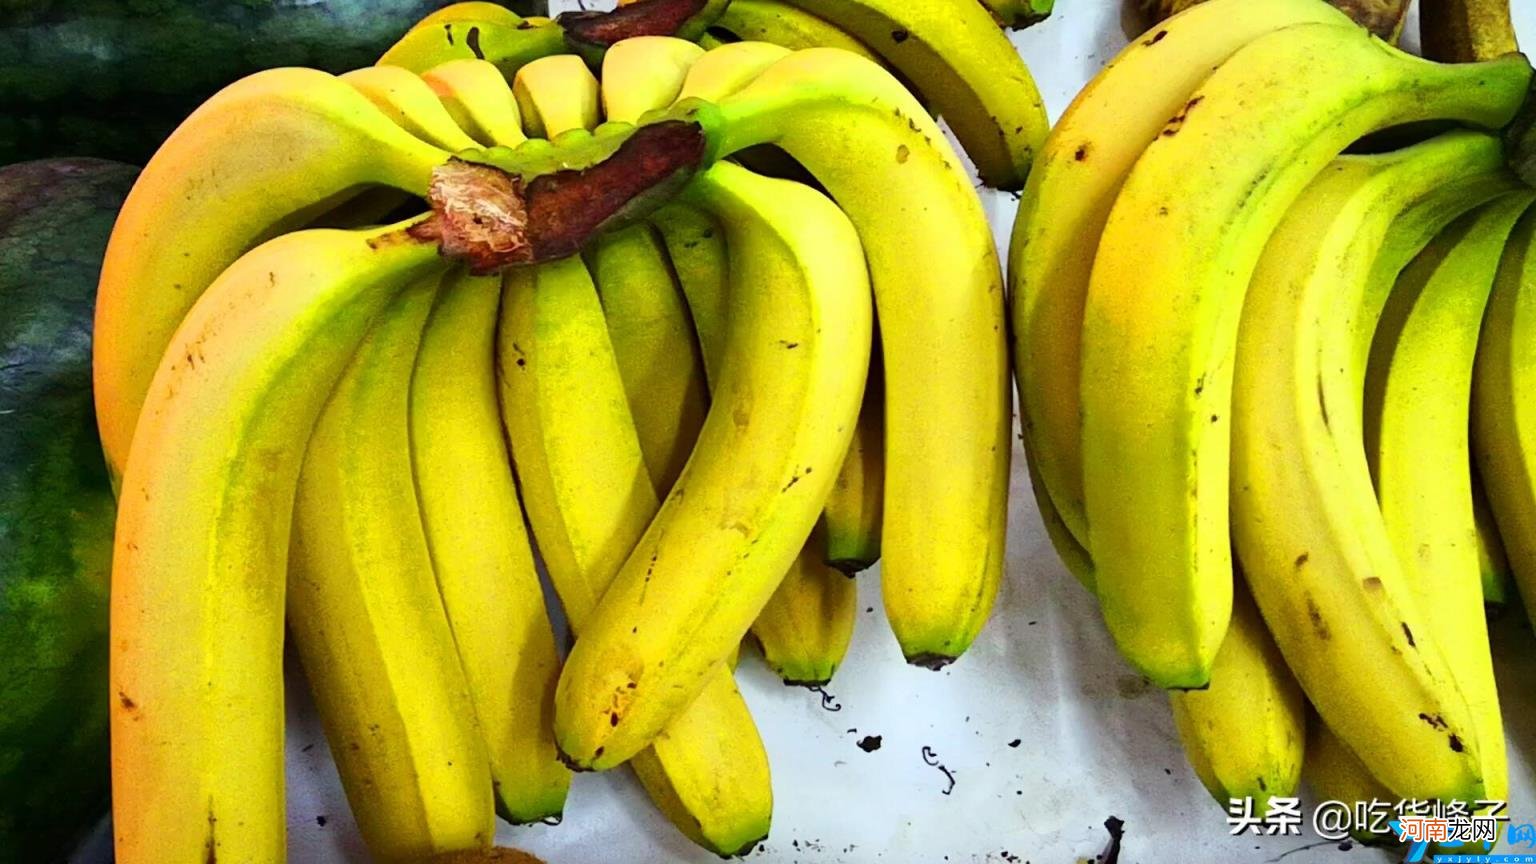 香蕉与芭蕉有什么不一样 香蕉与芭蕉的区别